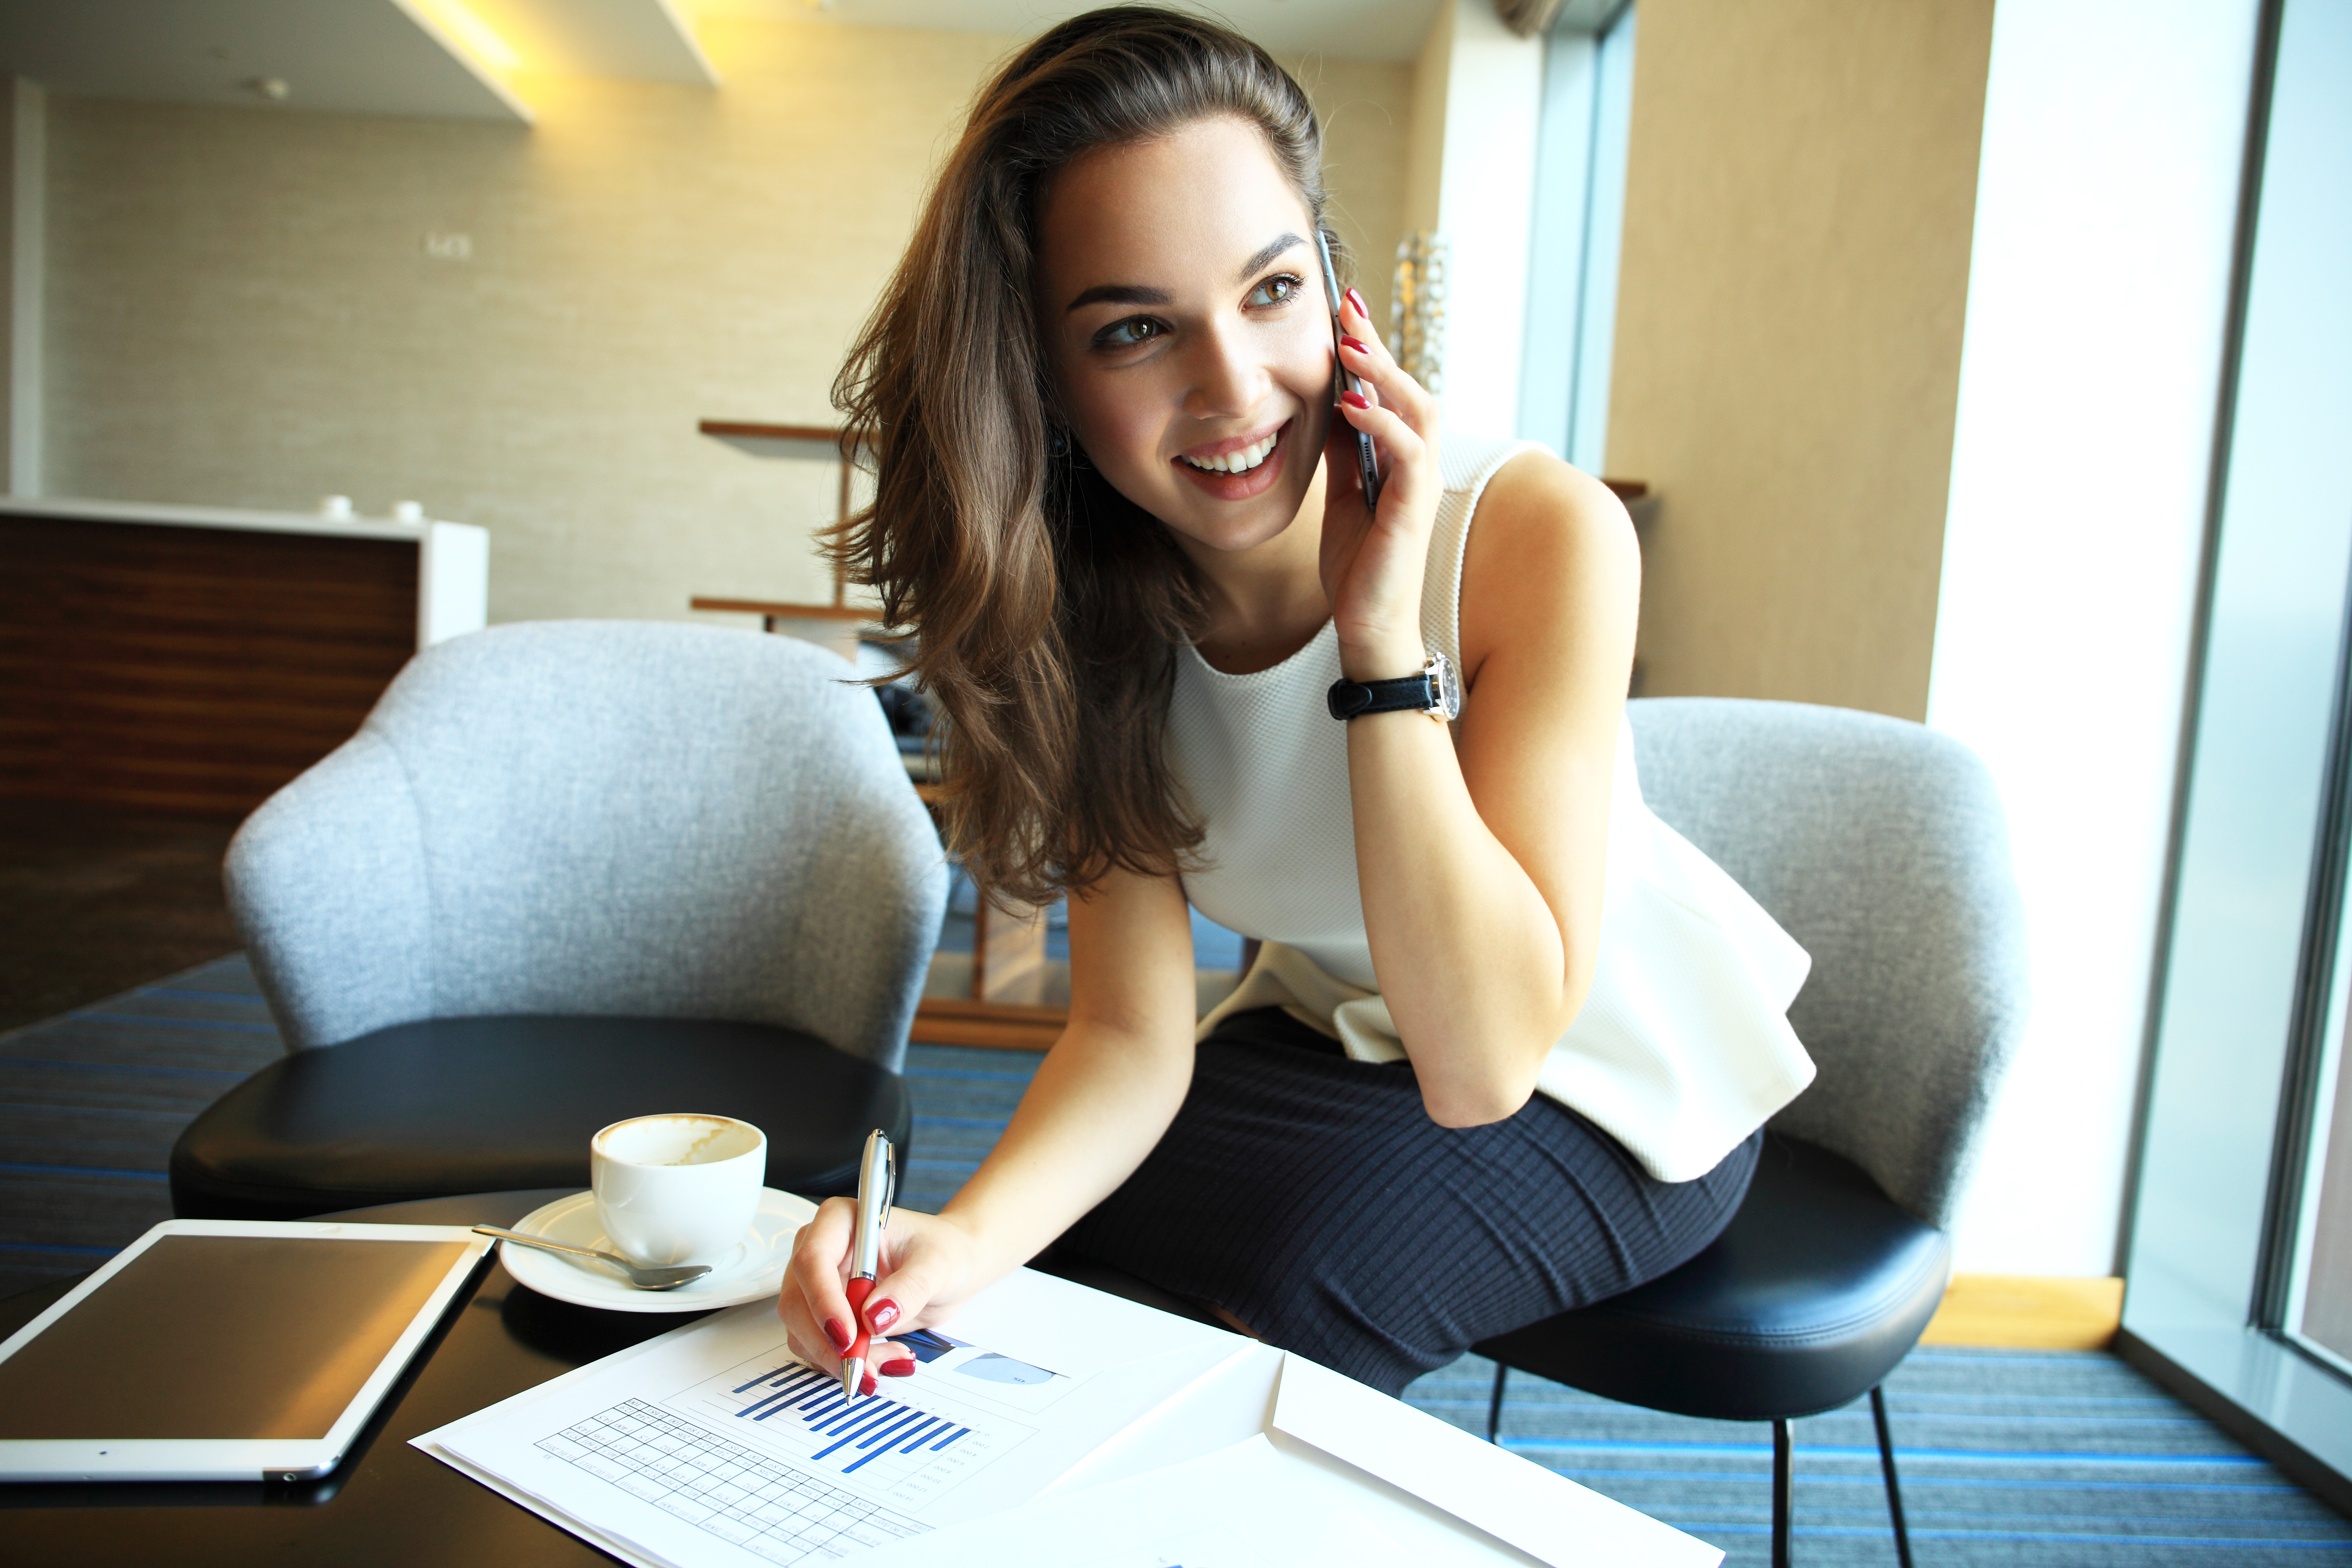 Une femme qui parle au téléphone tout en écrivant quelque chose | Source : Shutterstock